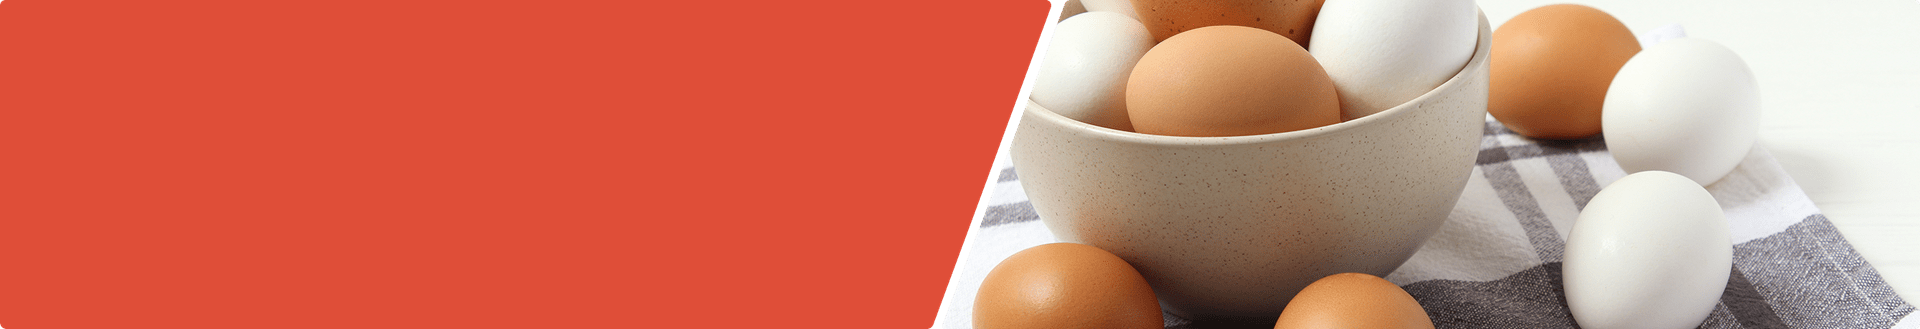 Article, Eieren en cholesterol